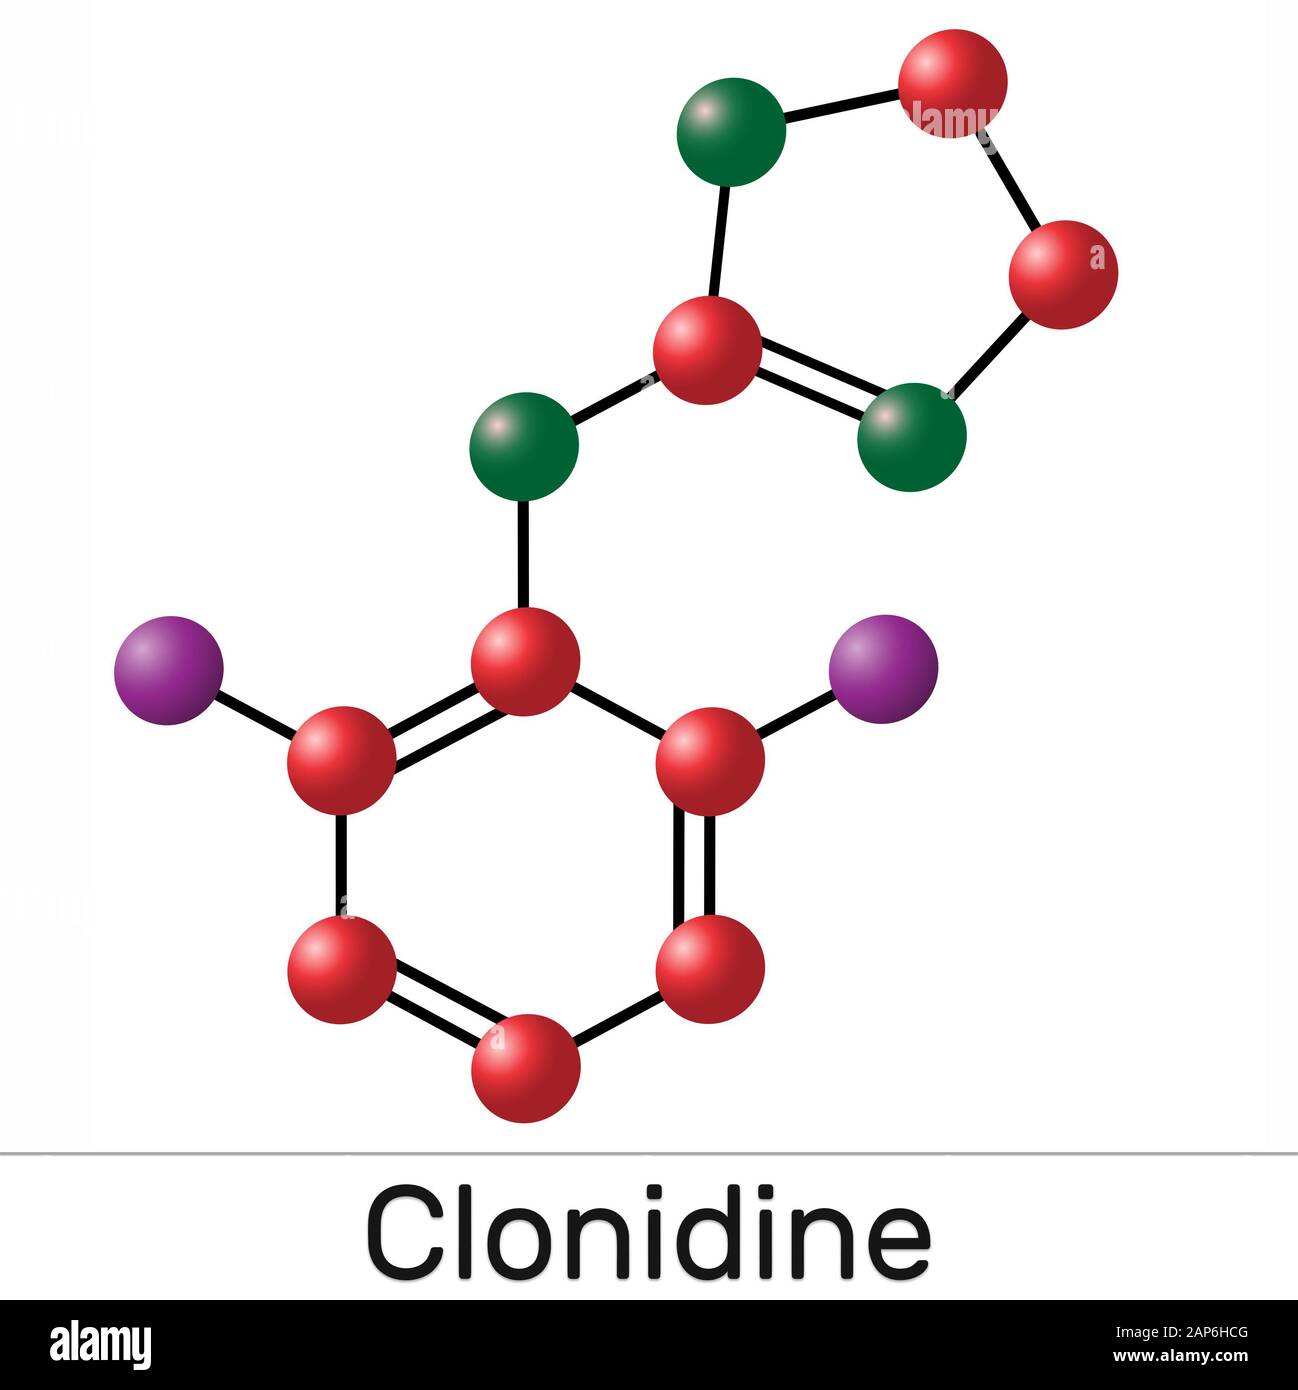 Clonidin-Molekül. Es ist nützlich für die Behandlung von Bluthochdruck, starken Schmerzen und ADHS. Abbildung Stockfoto